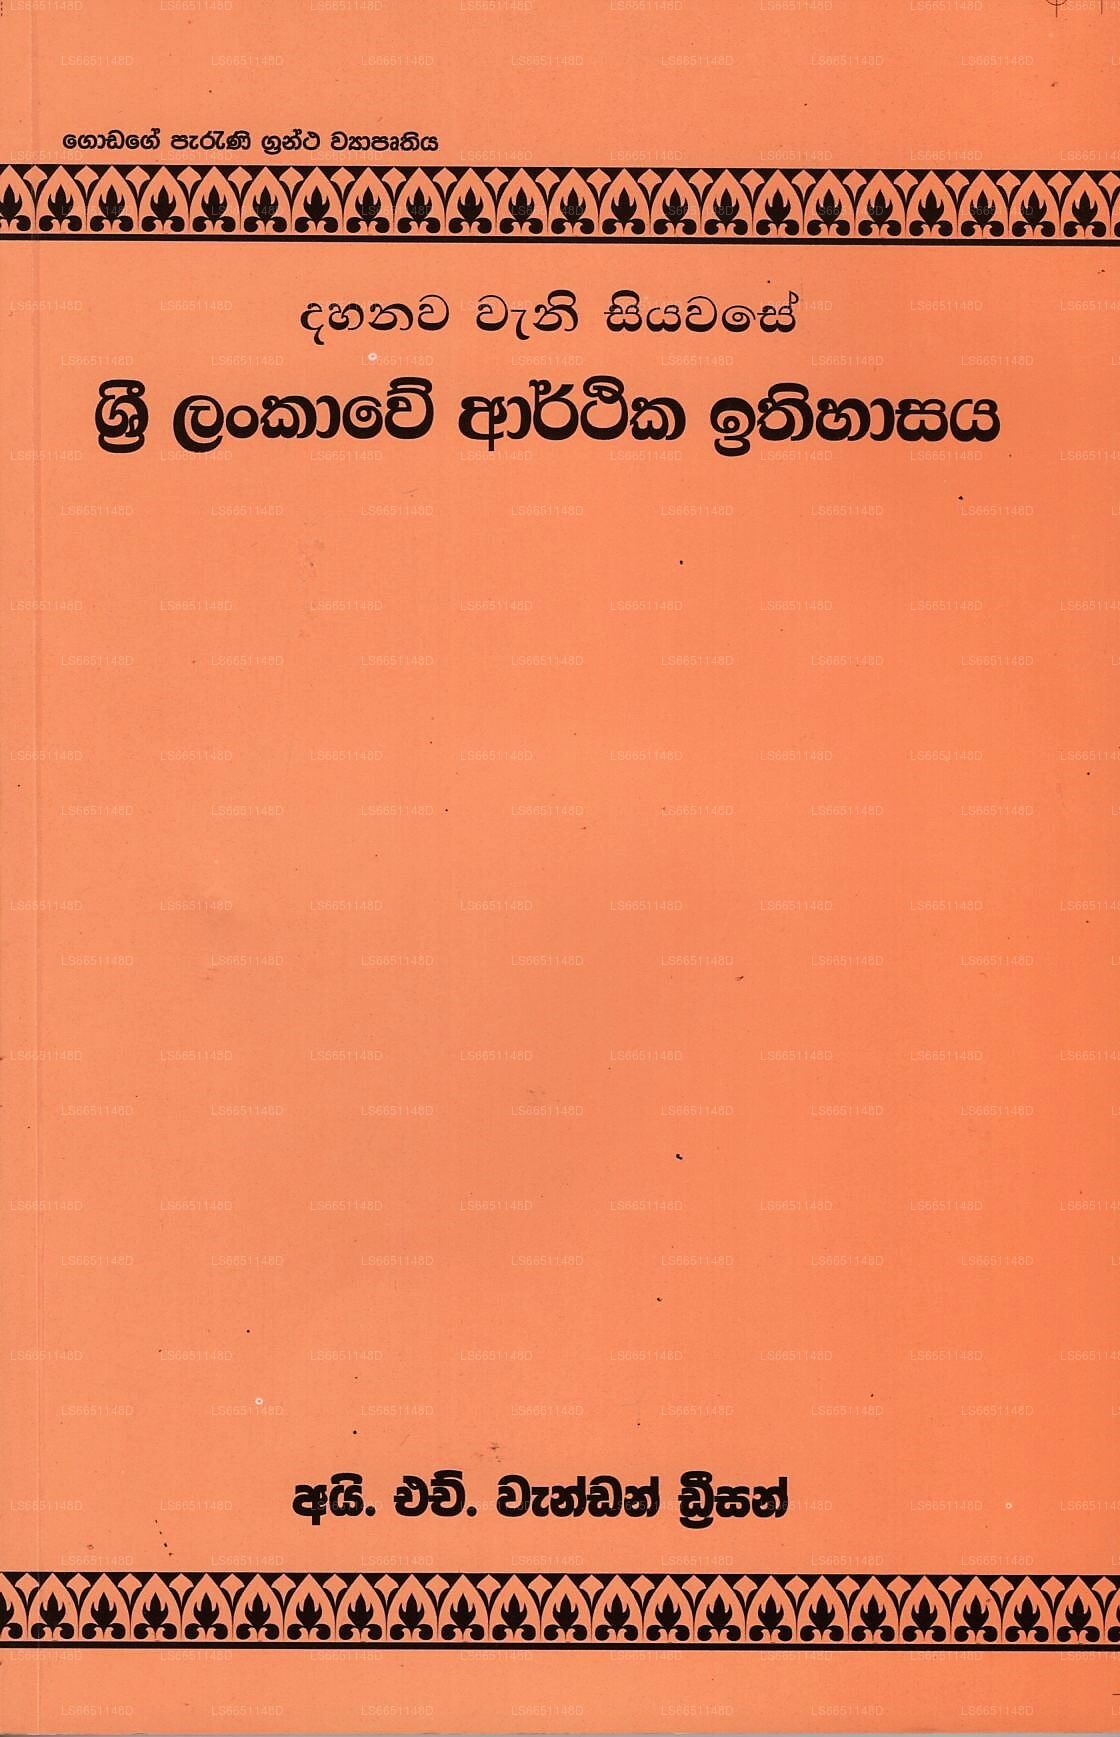 Dahanawa Wani Siyawase Sri Lankawe Arthika Ithihasaya